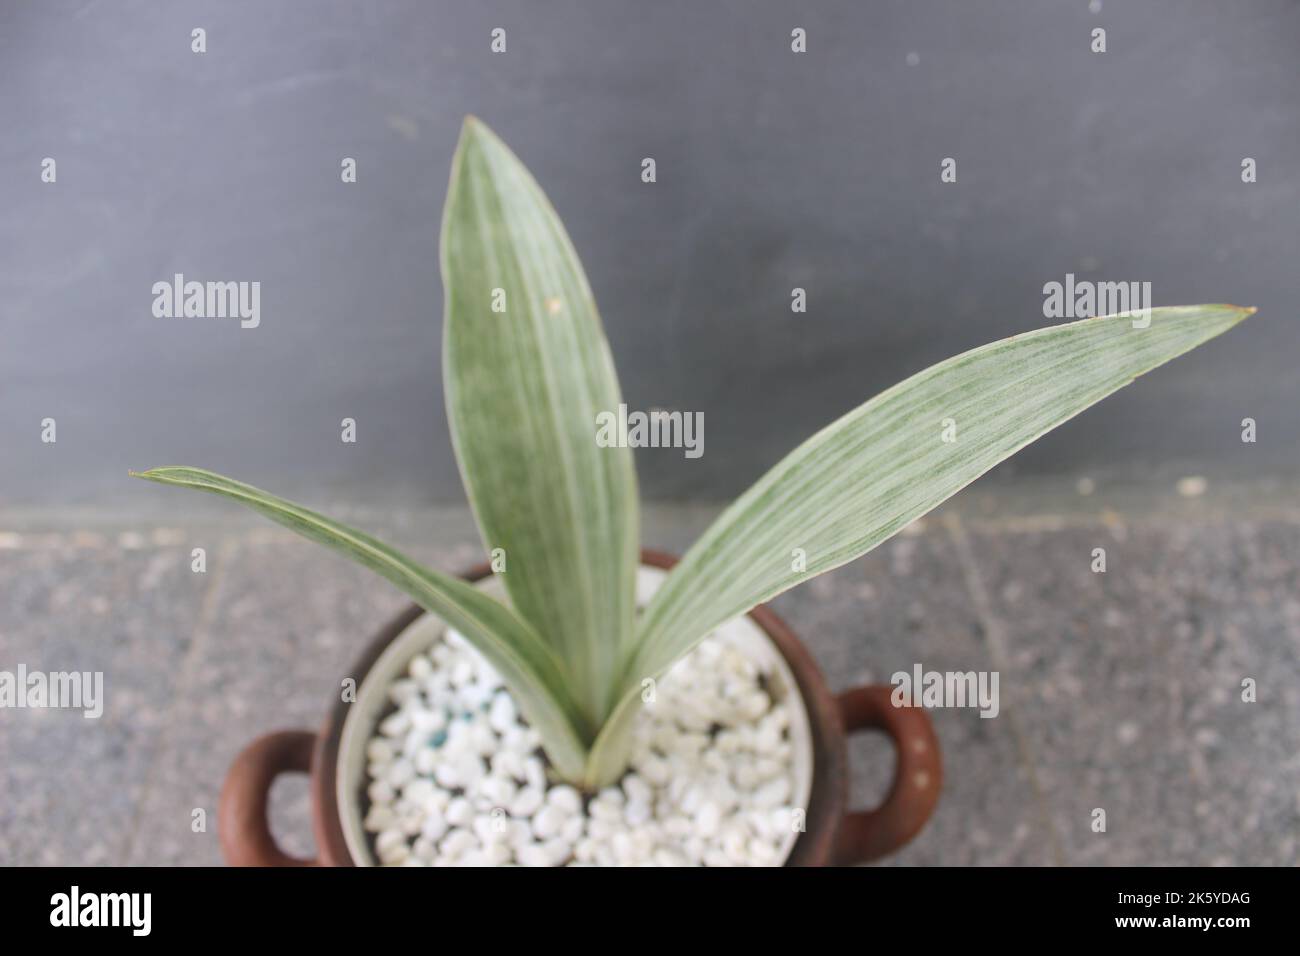 Primer plano de una planta de sansivera de plata en una olla sobre un fondo borroso. El nombre indonesio es la lengua de la suegra plateada. Plantas ornamentales en el hogar Foto de stock